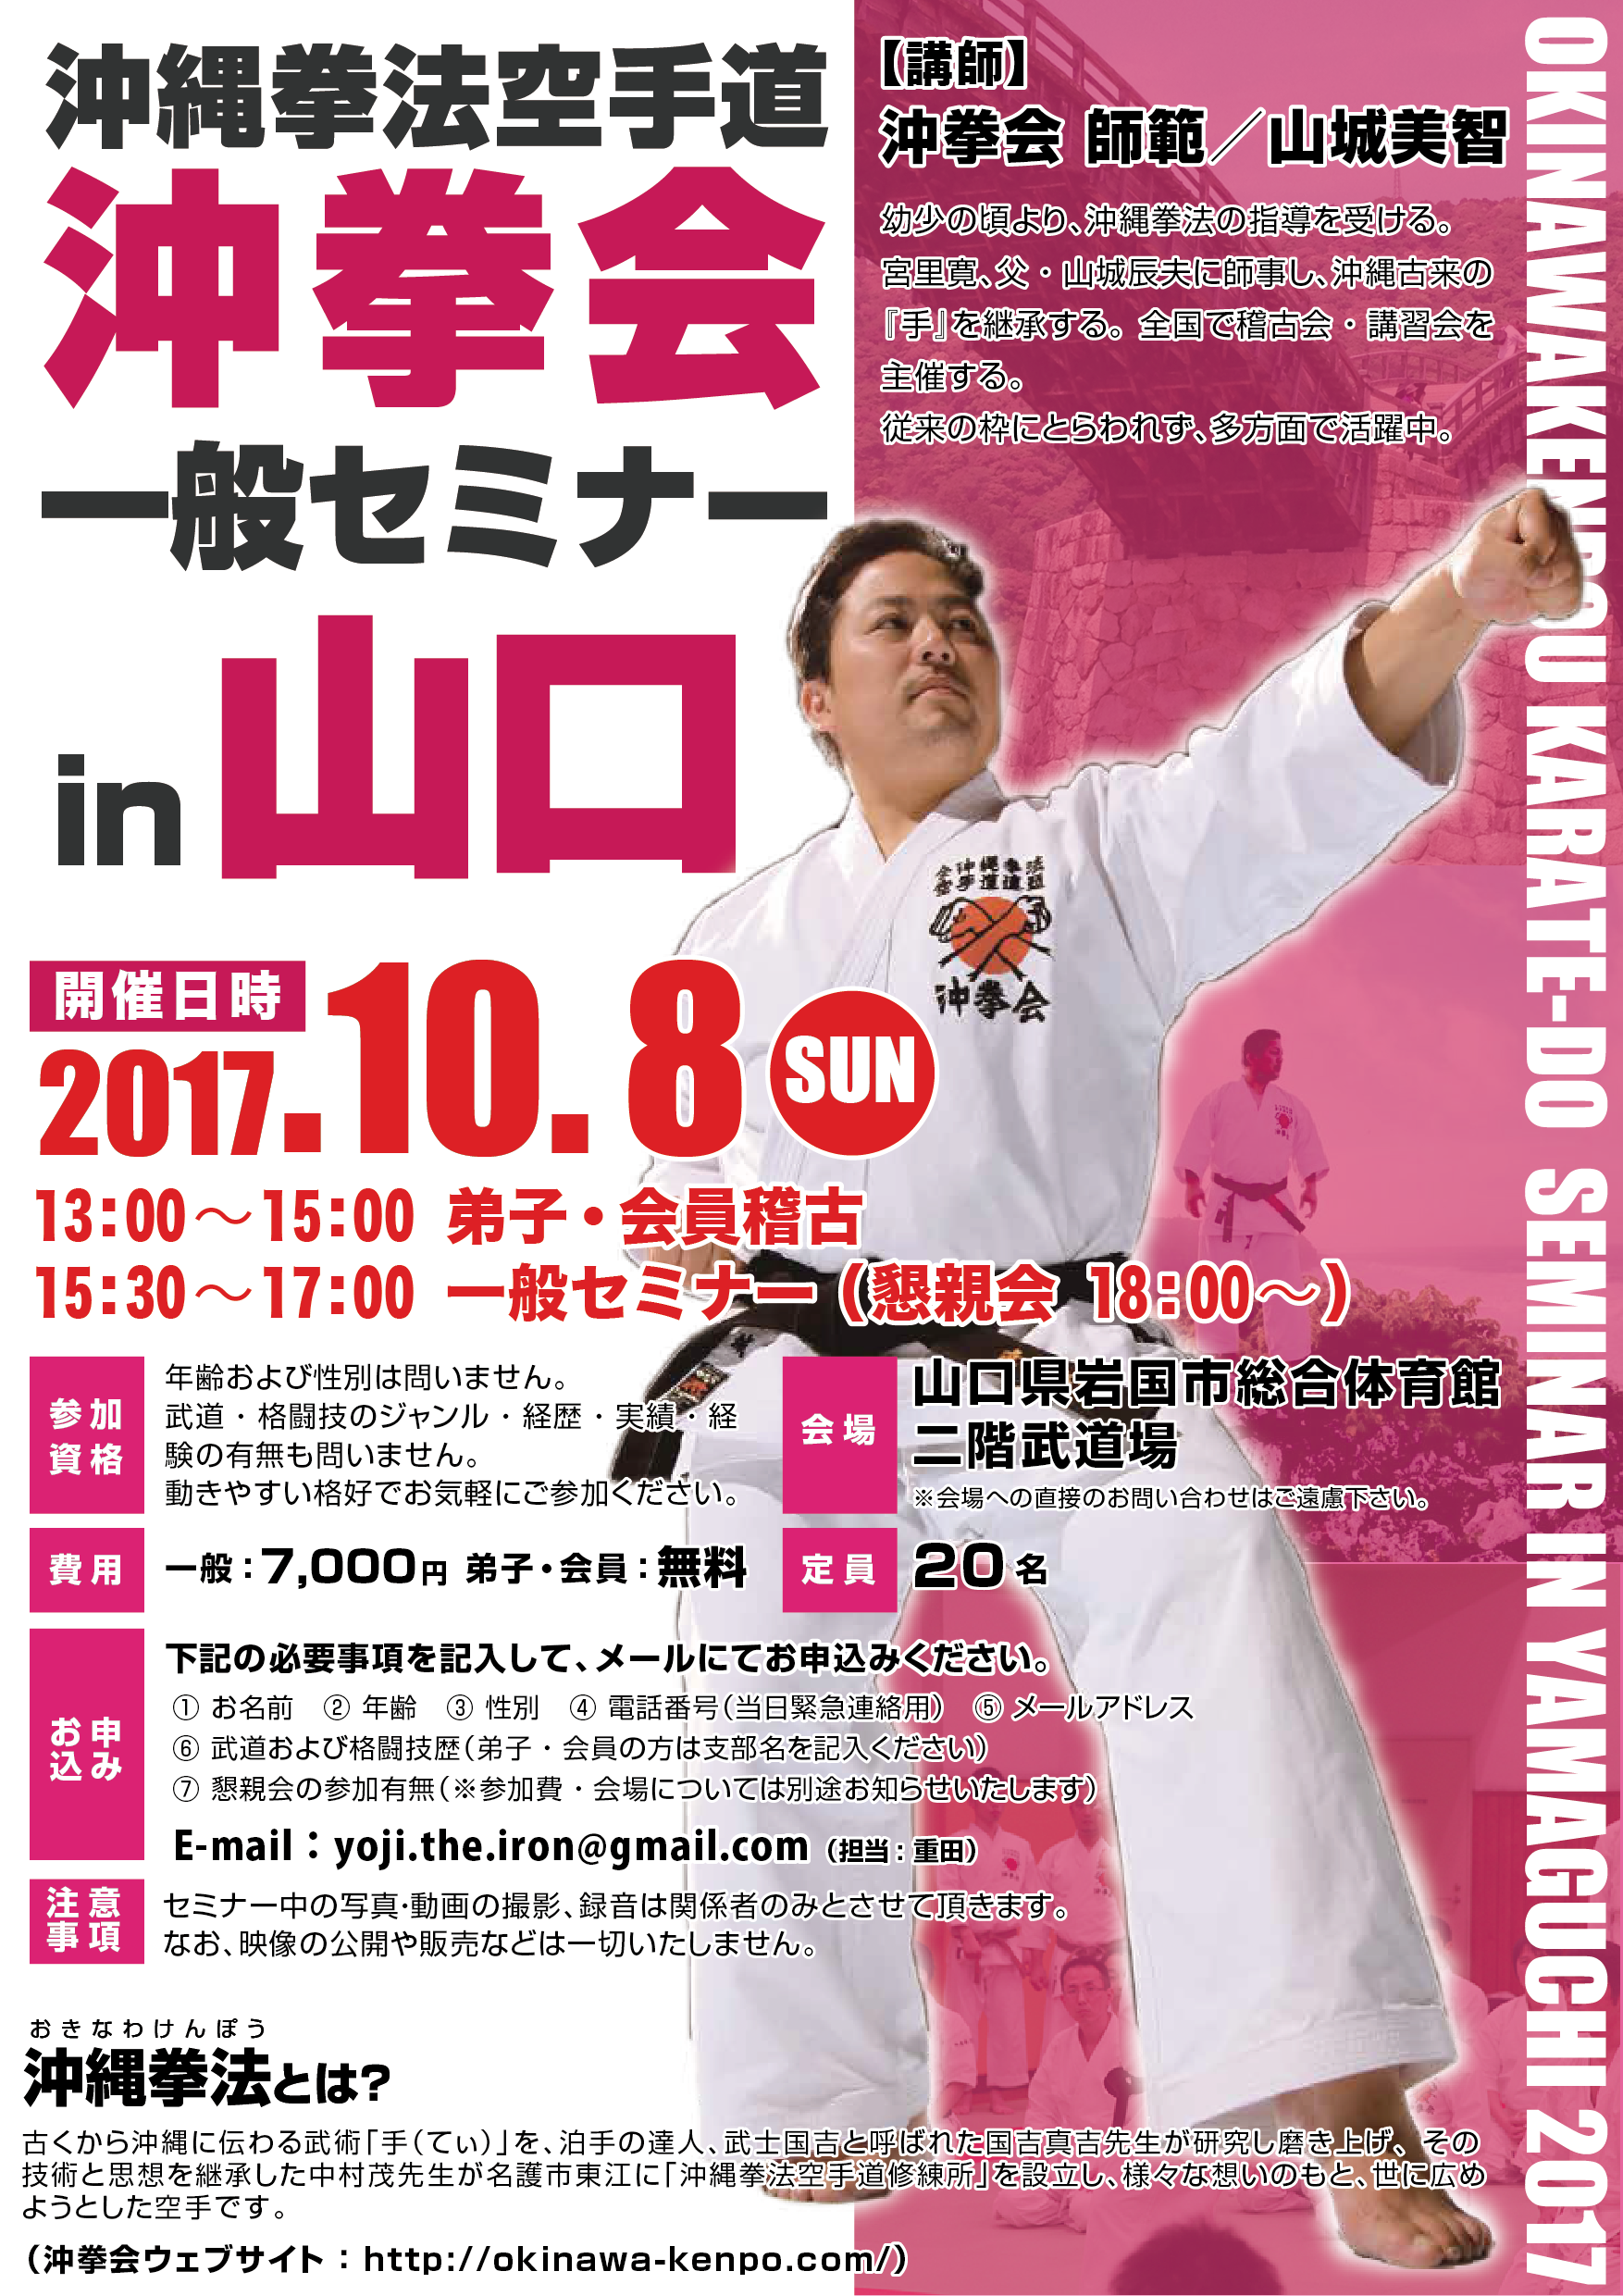 10月15日(日) 沖縄拳法 山口セミナー